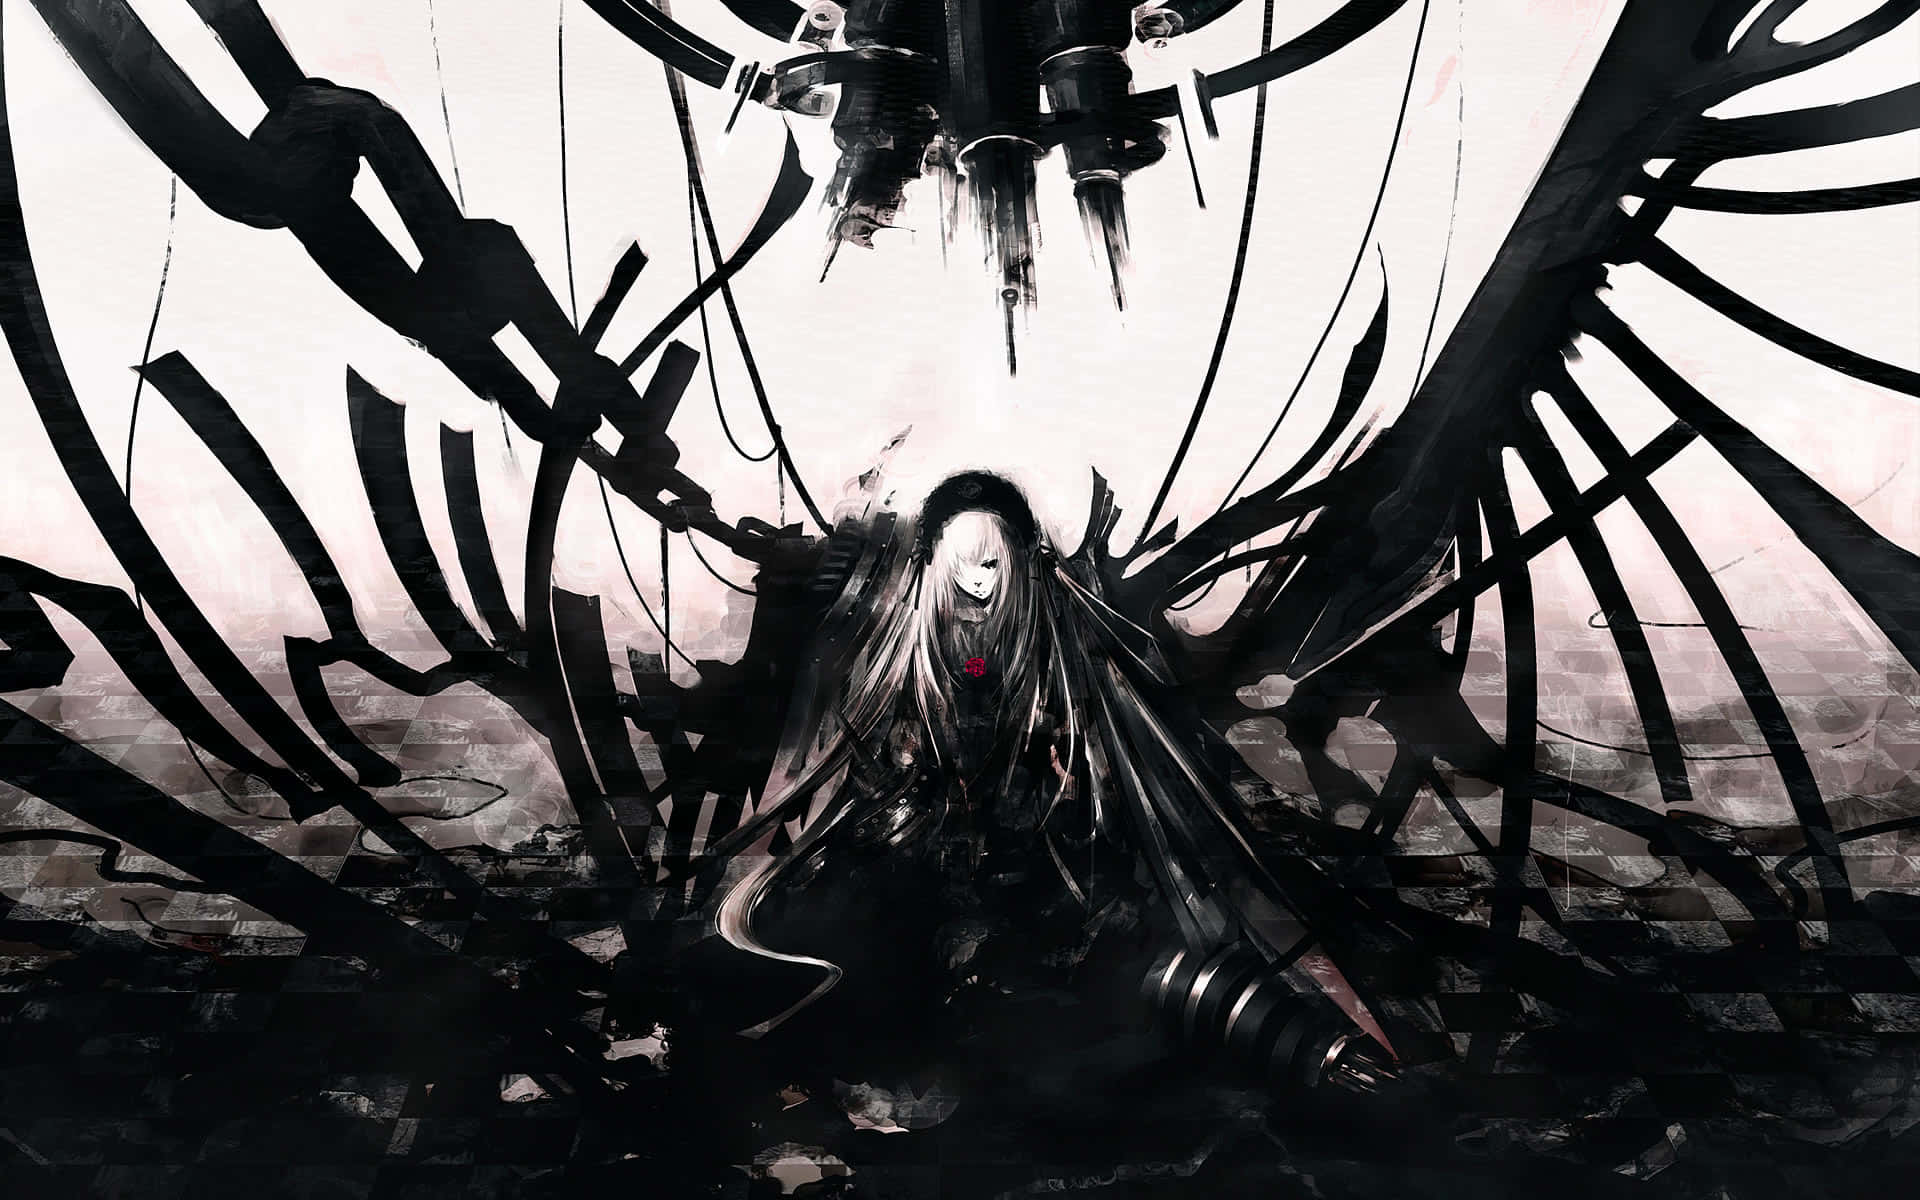 Mørk anime kunstværk skildrer en mystisk og hjemsøgende atmosfære.